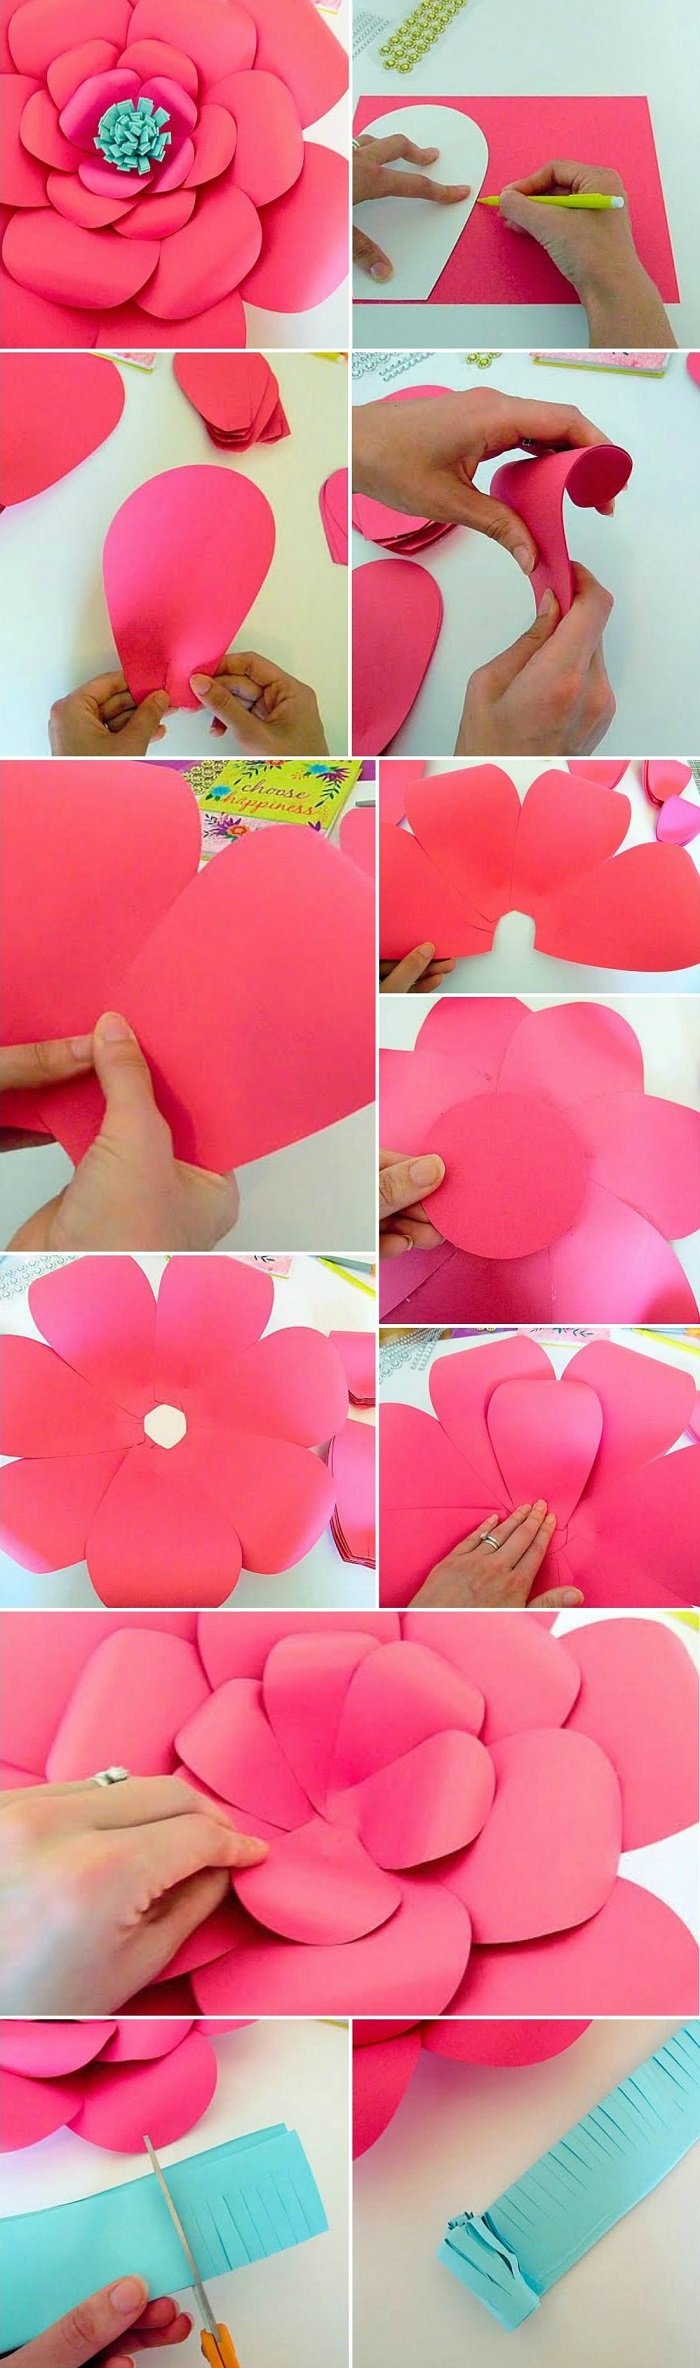 бумажные цветы как сделать